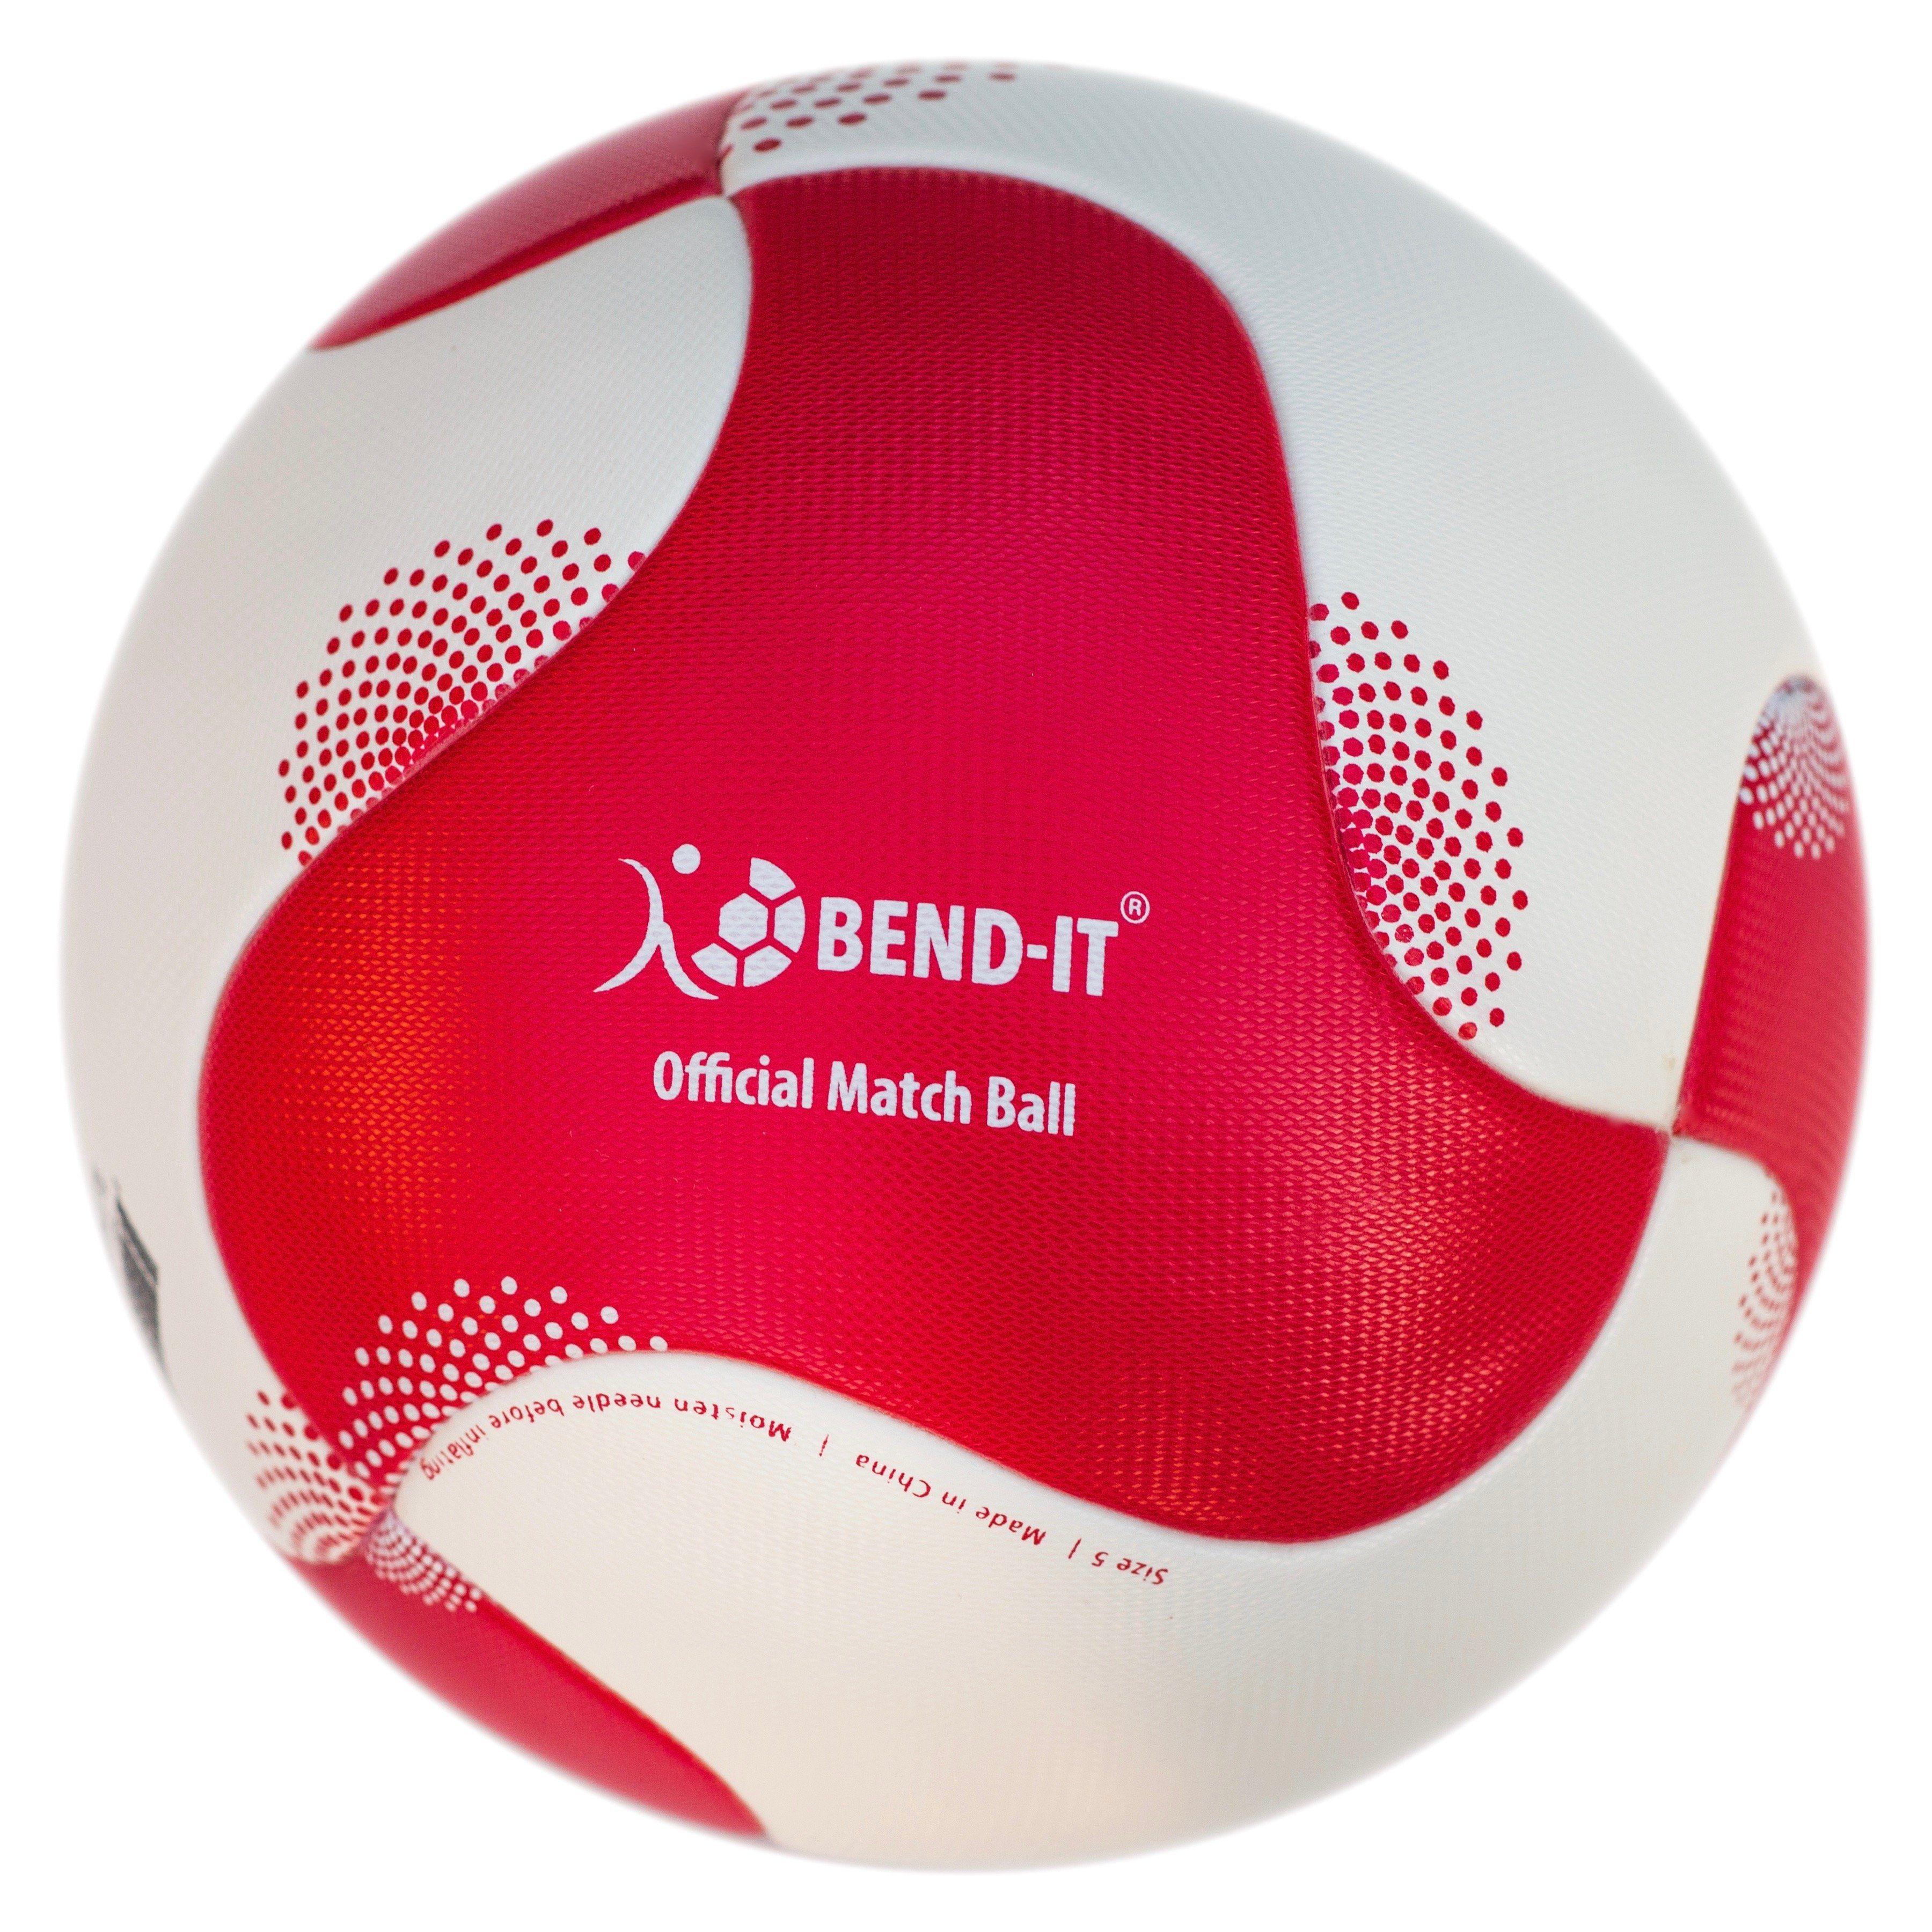 Five Ball Diadora Logo - Bend-It Soccer, Reverse-Curl-It Supreme, Soccer Ball 5, Match Ball ...